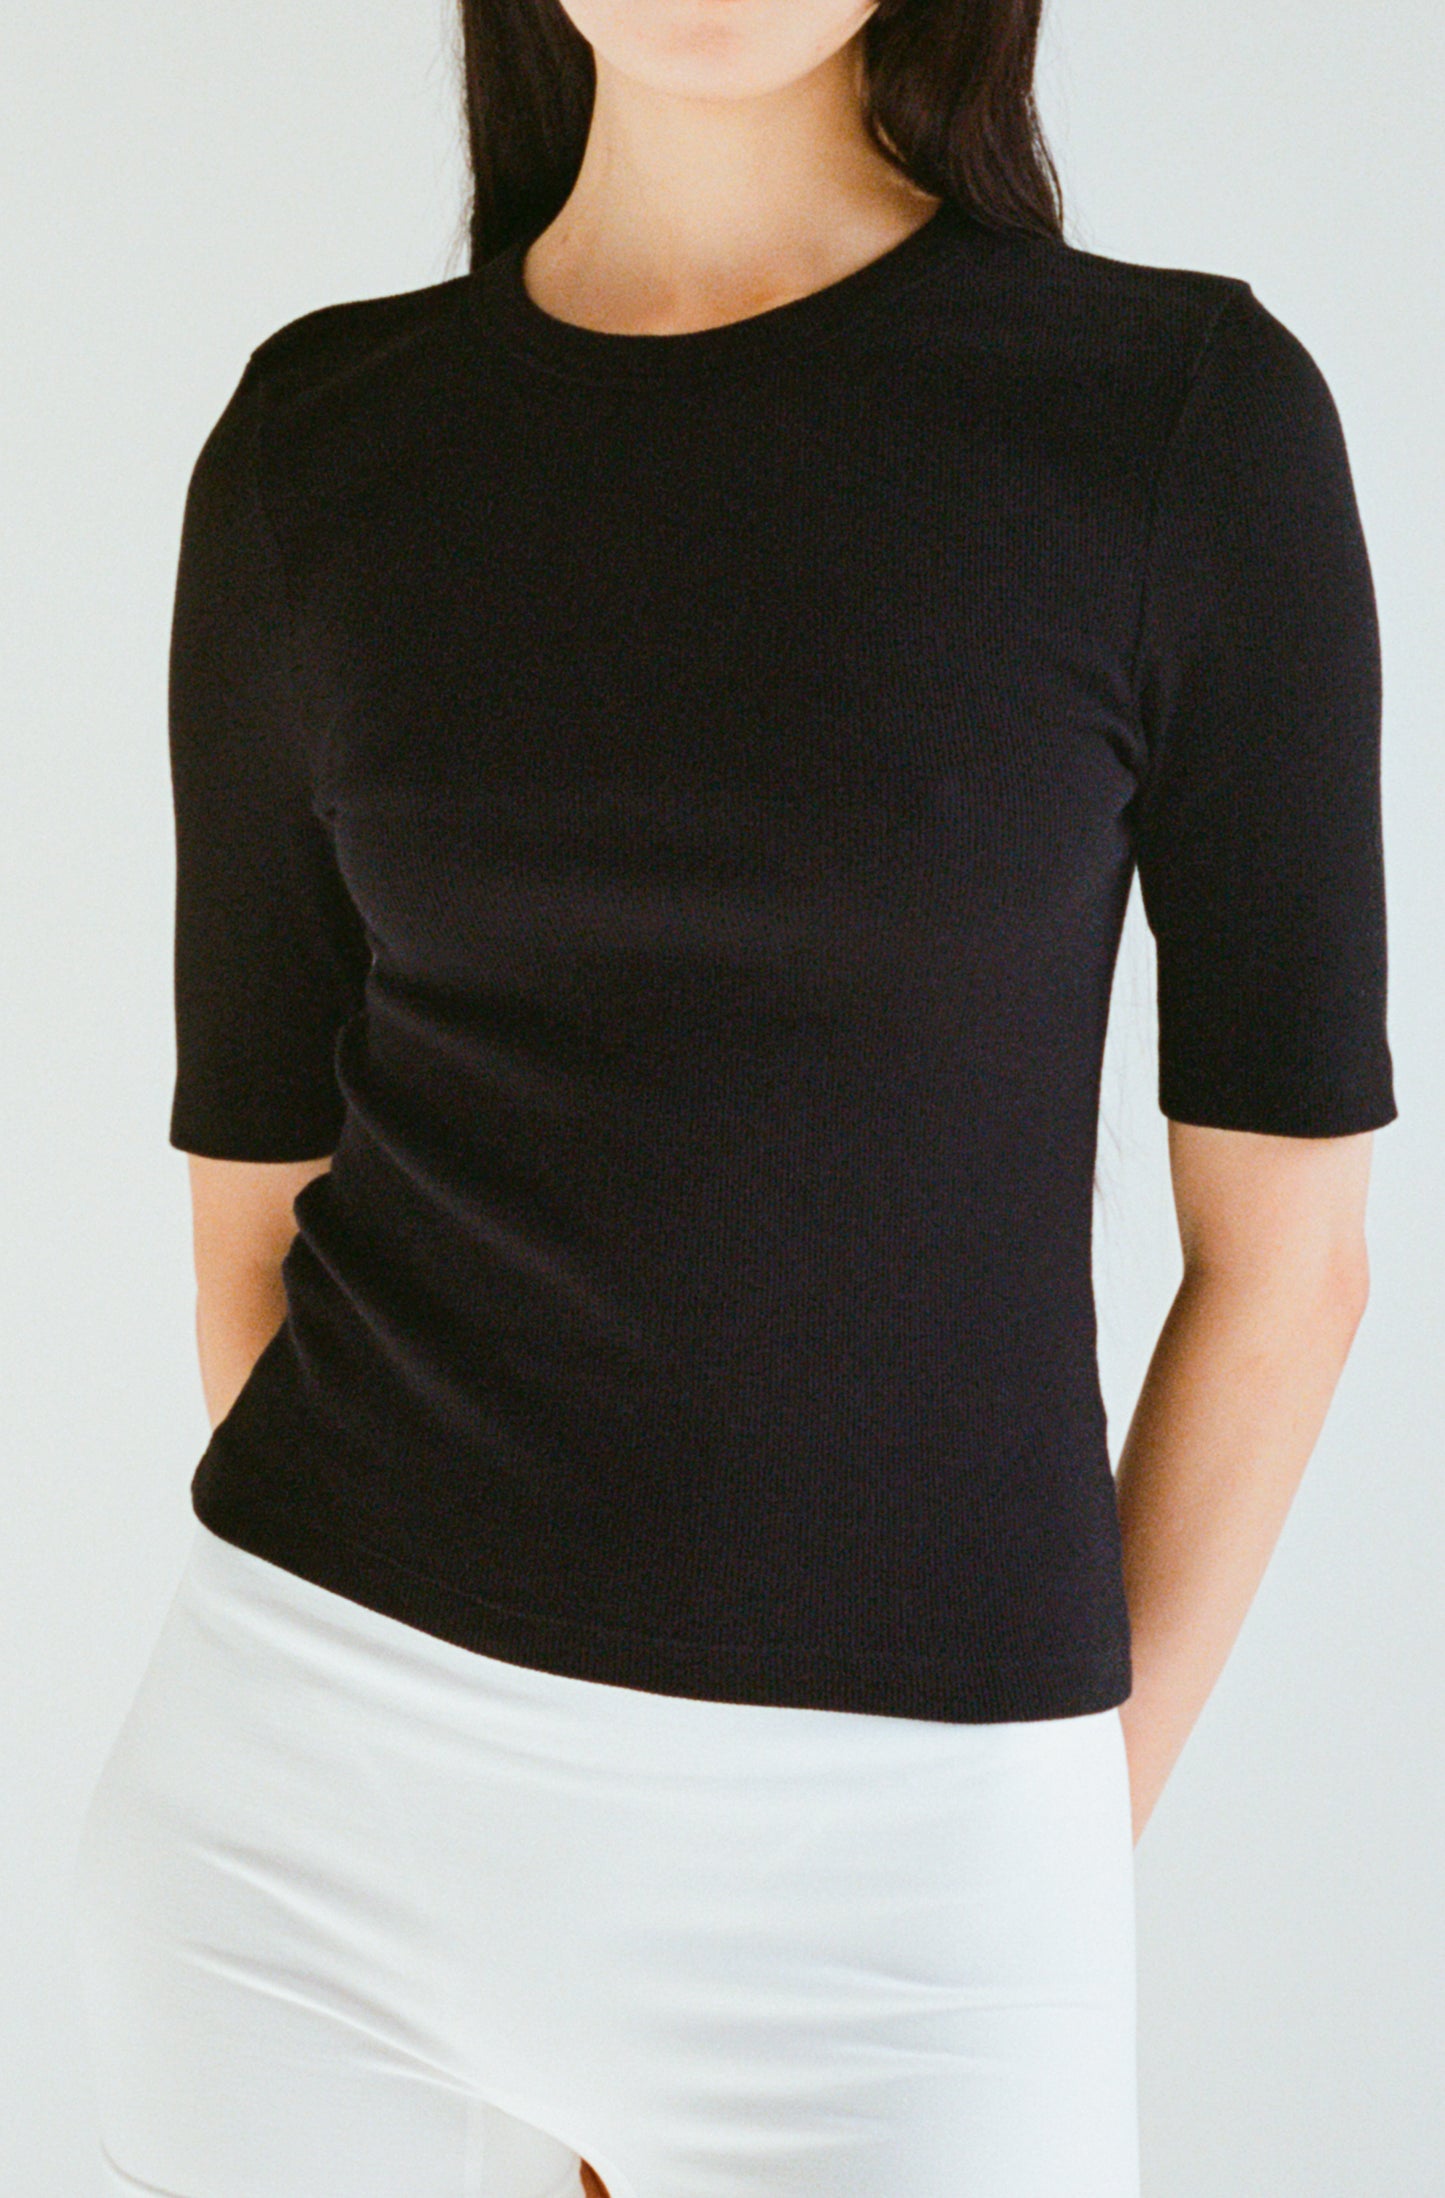 Le t-shirt noir à manches 3/4 femme en coton côtelé biologique OMEAR, vue porté de face